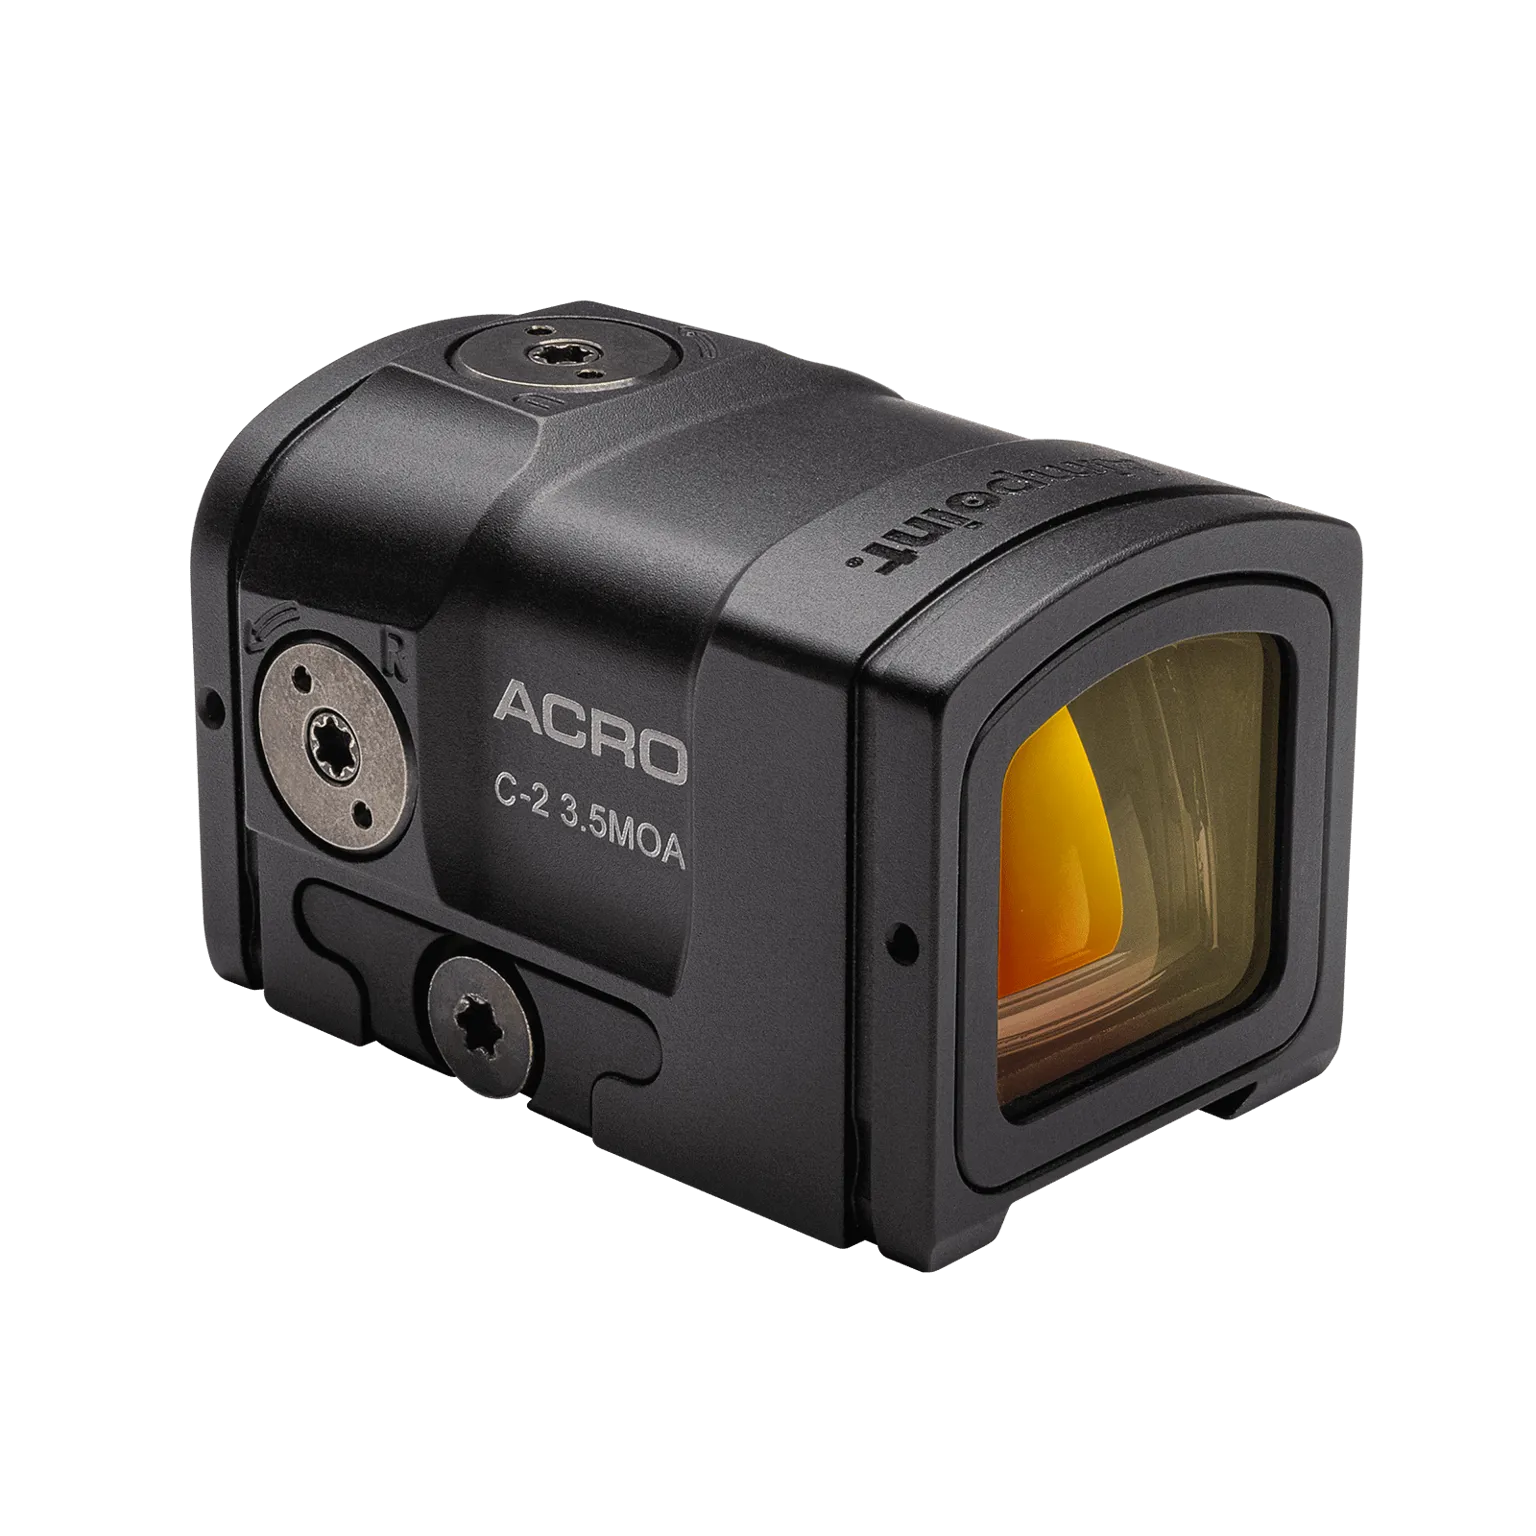 Acro C-2™ 3.5 MOA - Viseur point rouge avec interface Acro™ intégrée - 3